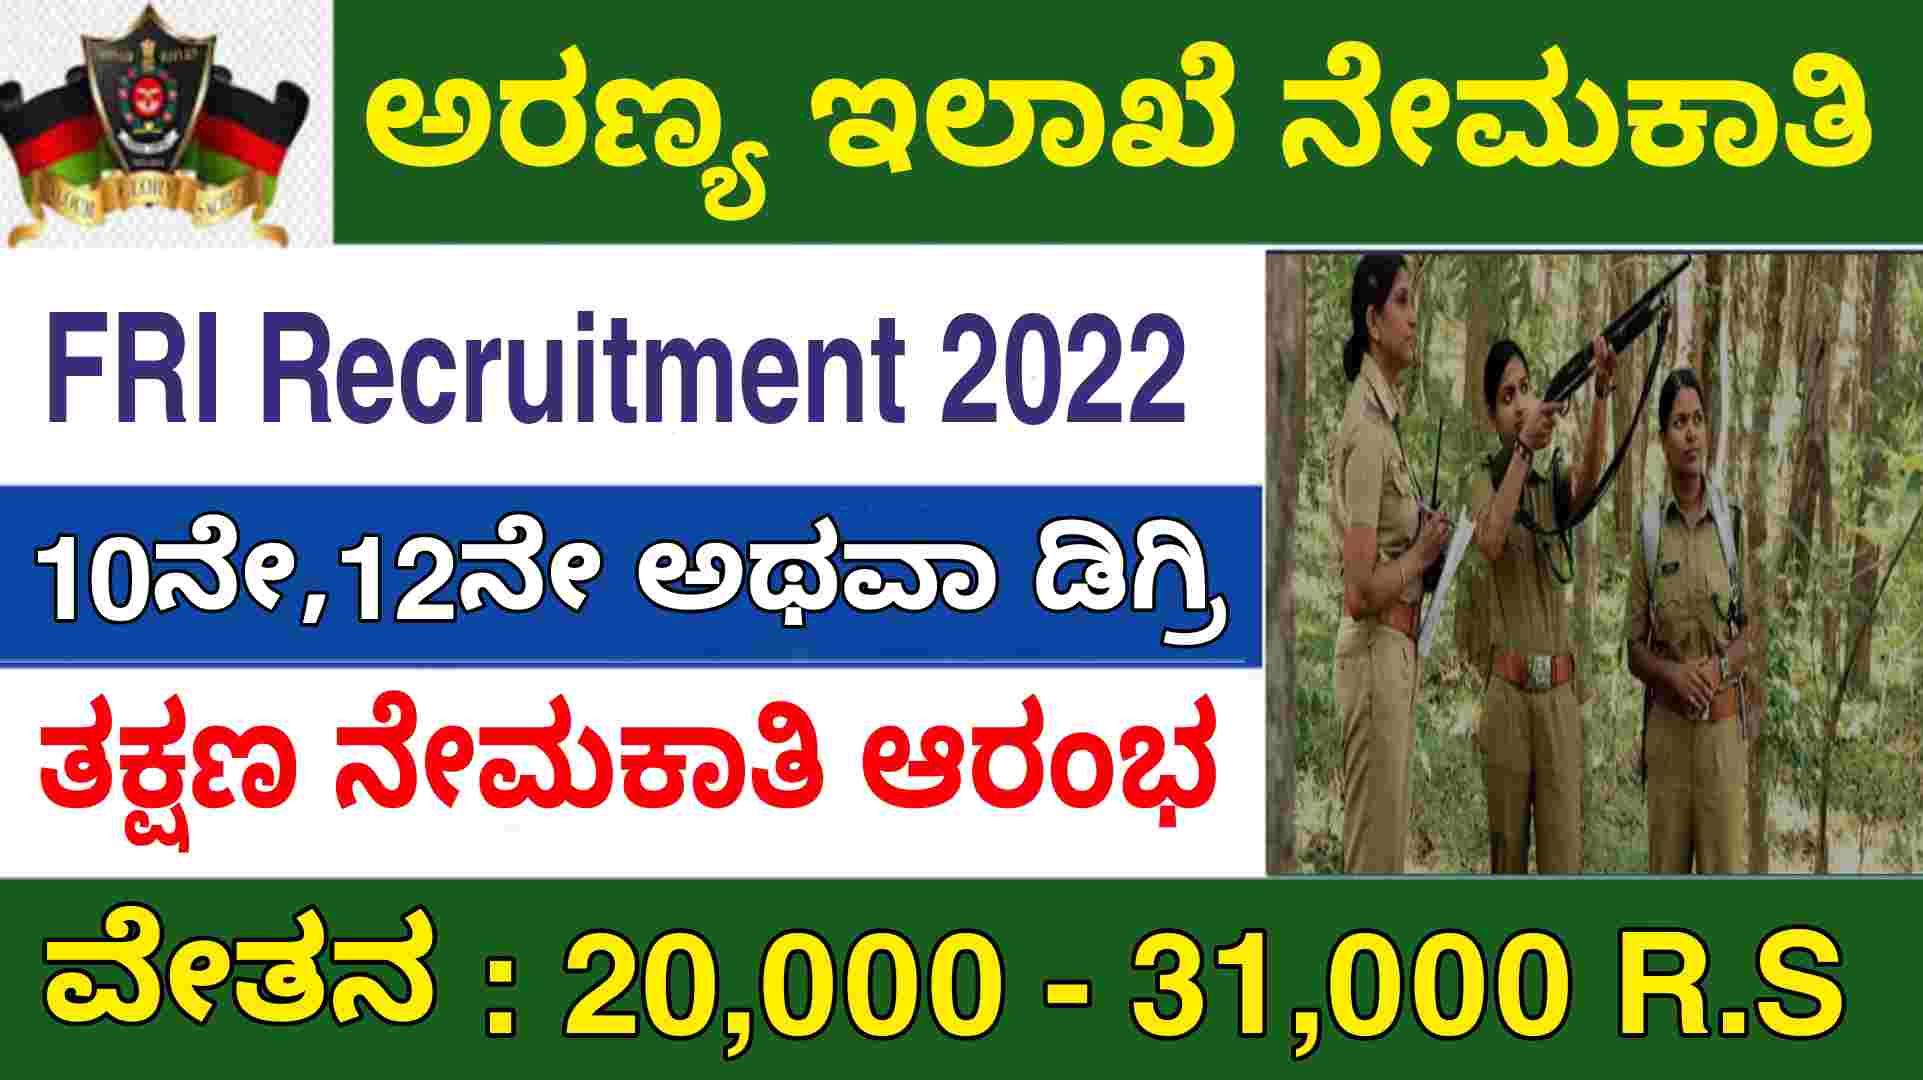 ಅರಣ್ಯ ಇಲಾಖೆ ನೇಮಕಾತಿ FRI Recruitment 2022 | Best govt jobs